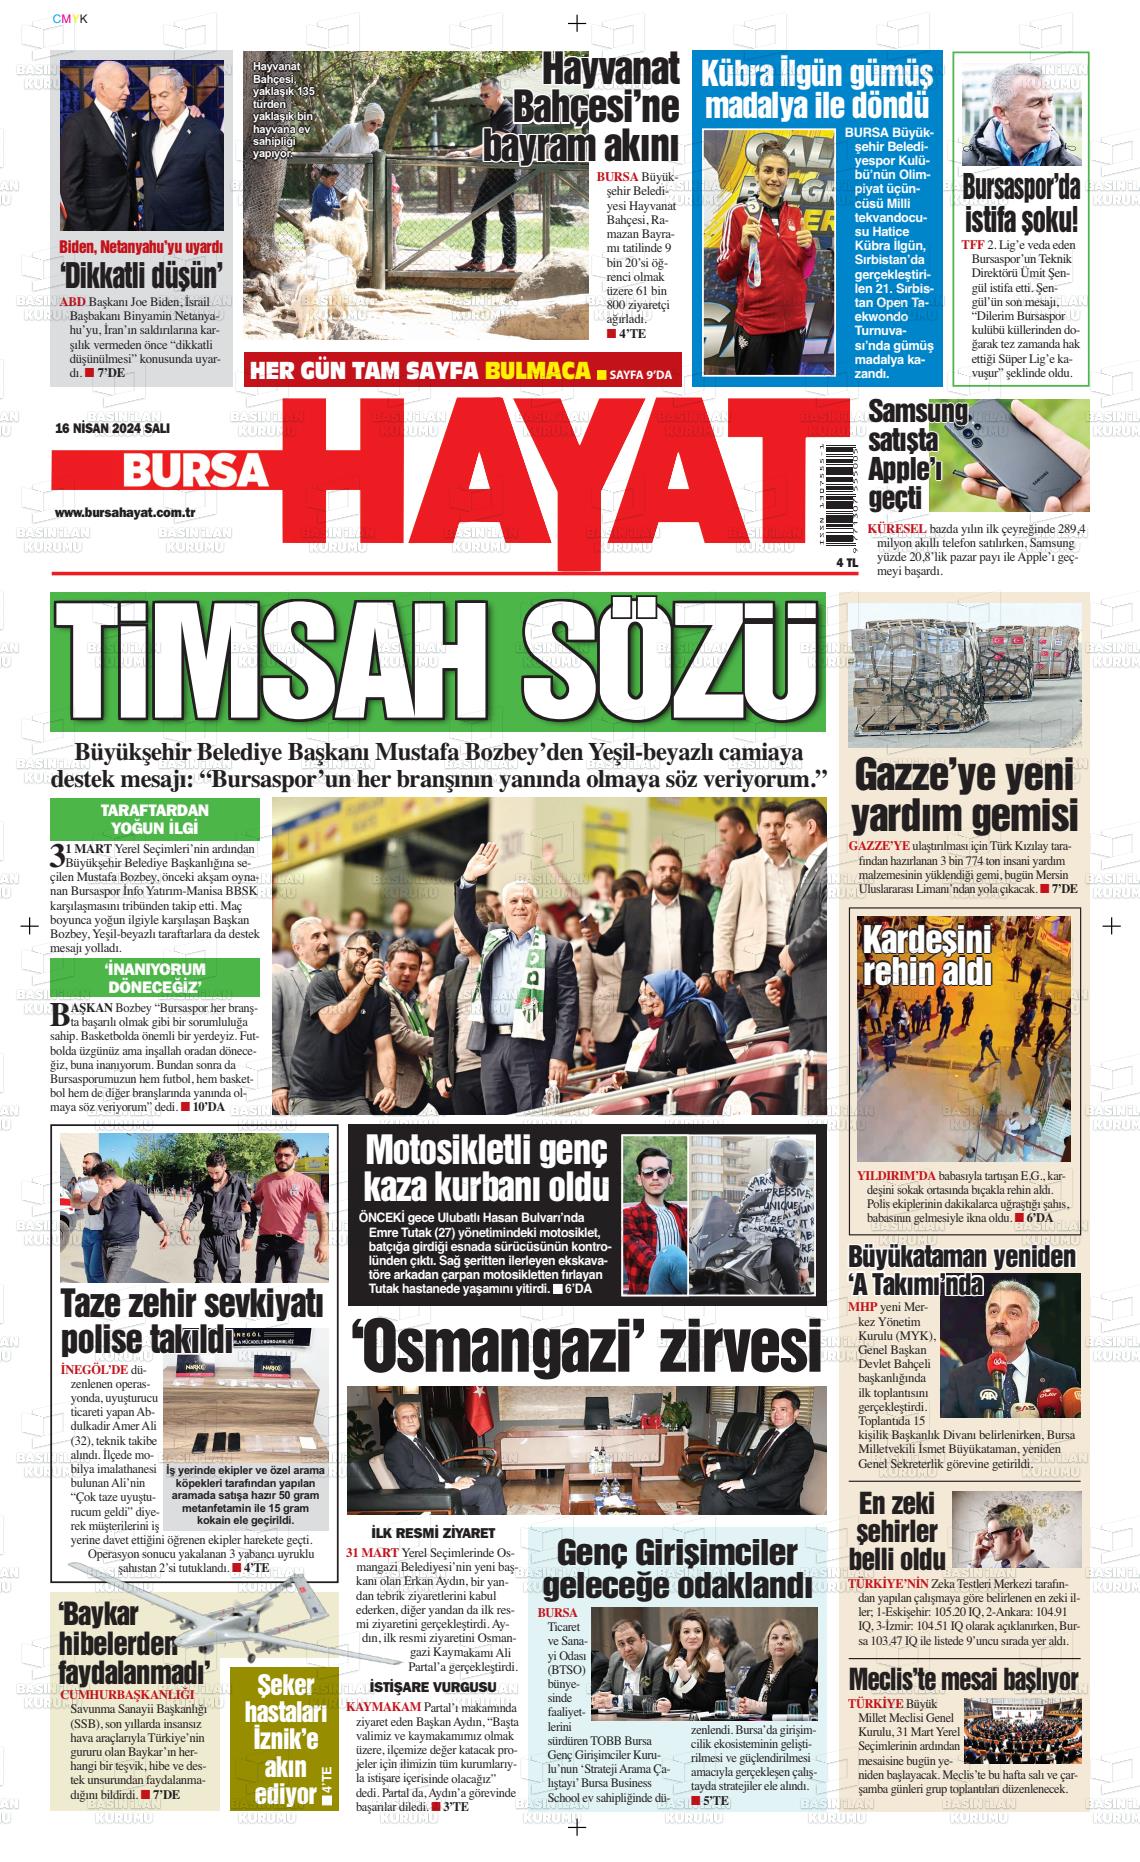 18 Nisan 2024 Bursa Hayat Gazete Manşeti